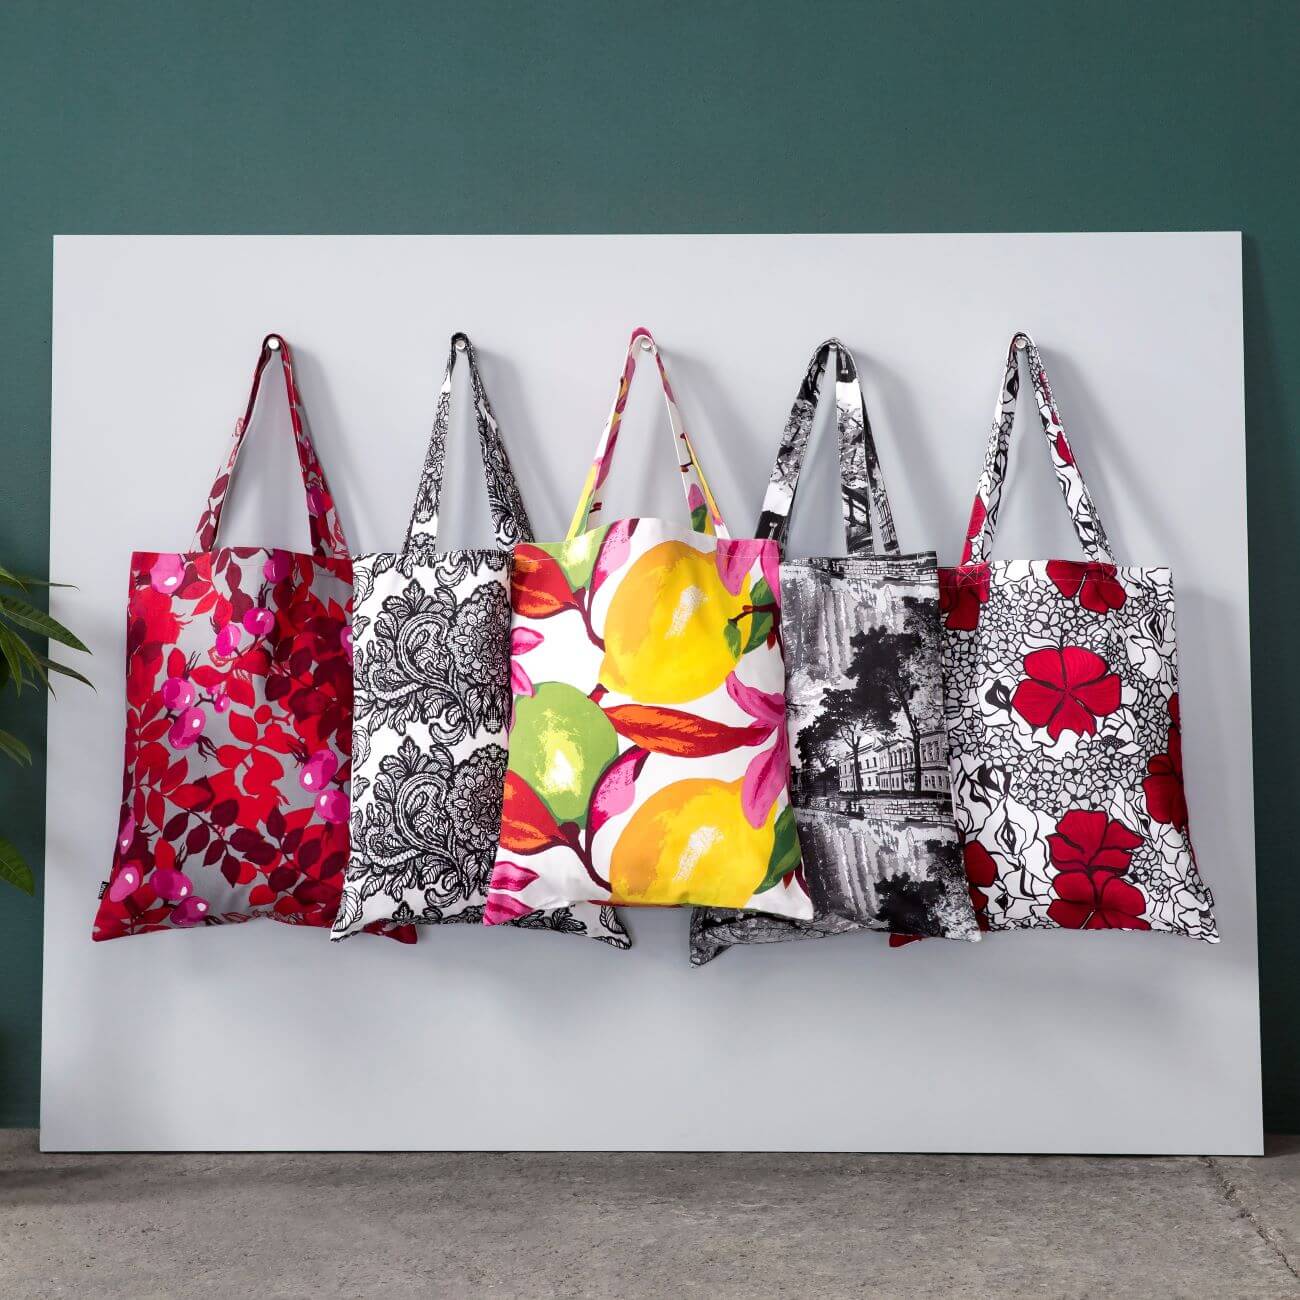 Bawełniane kolorowe torby skandynawskie w aranżacji w studiu firmy Vallila. Torby na zakupy przywieszone na ścianie widoczne w całości. Skandynawski design